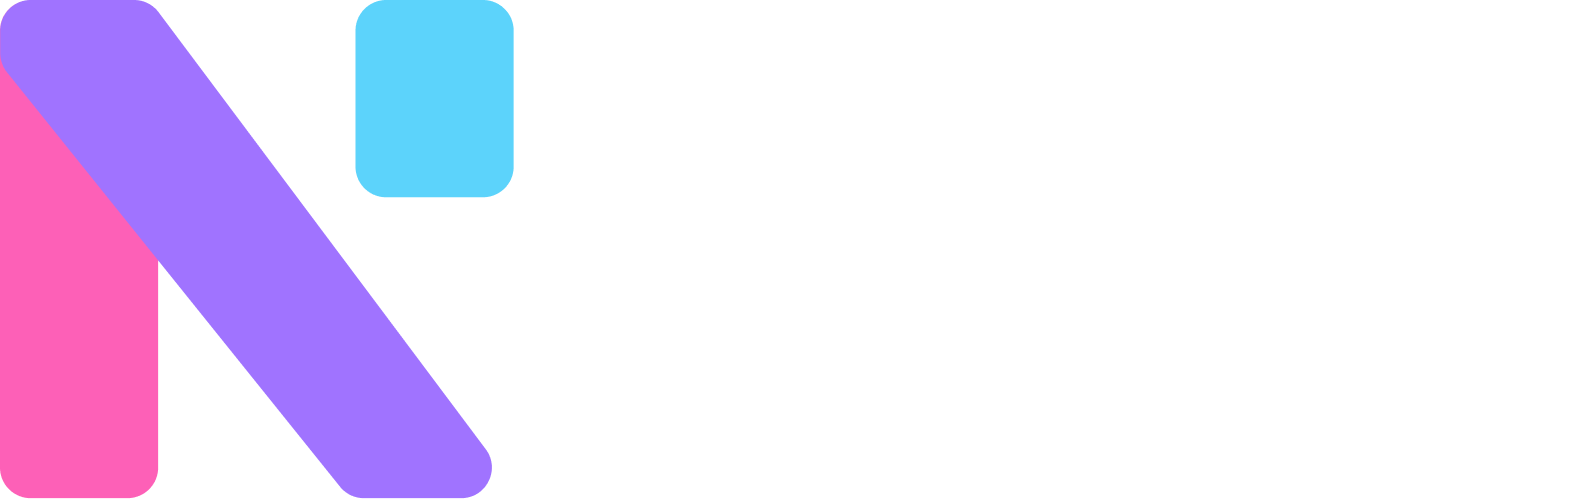 Nestt Logo